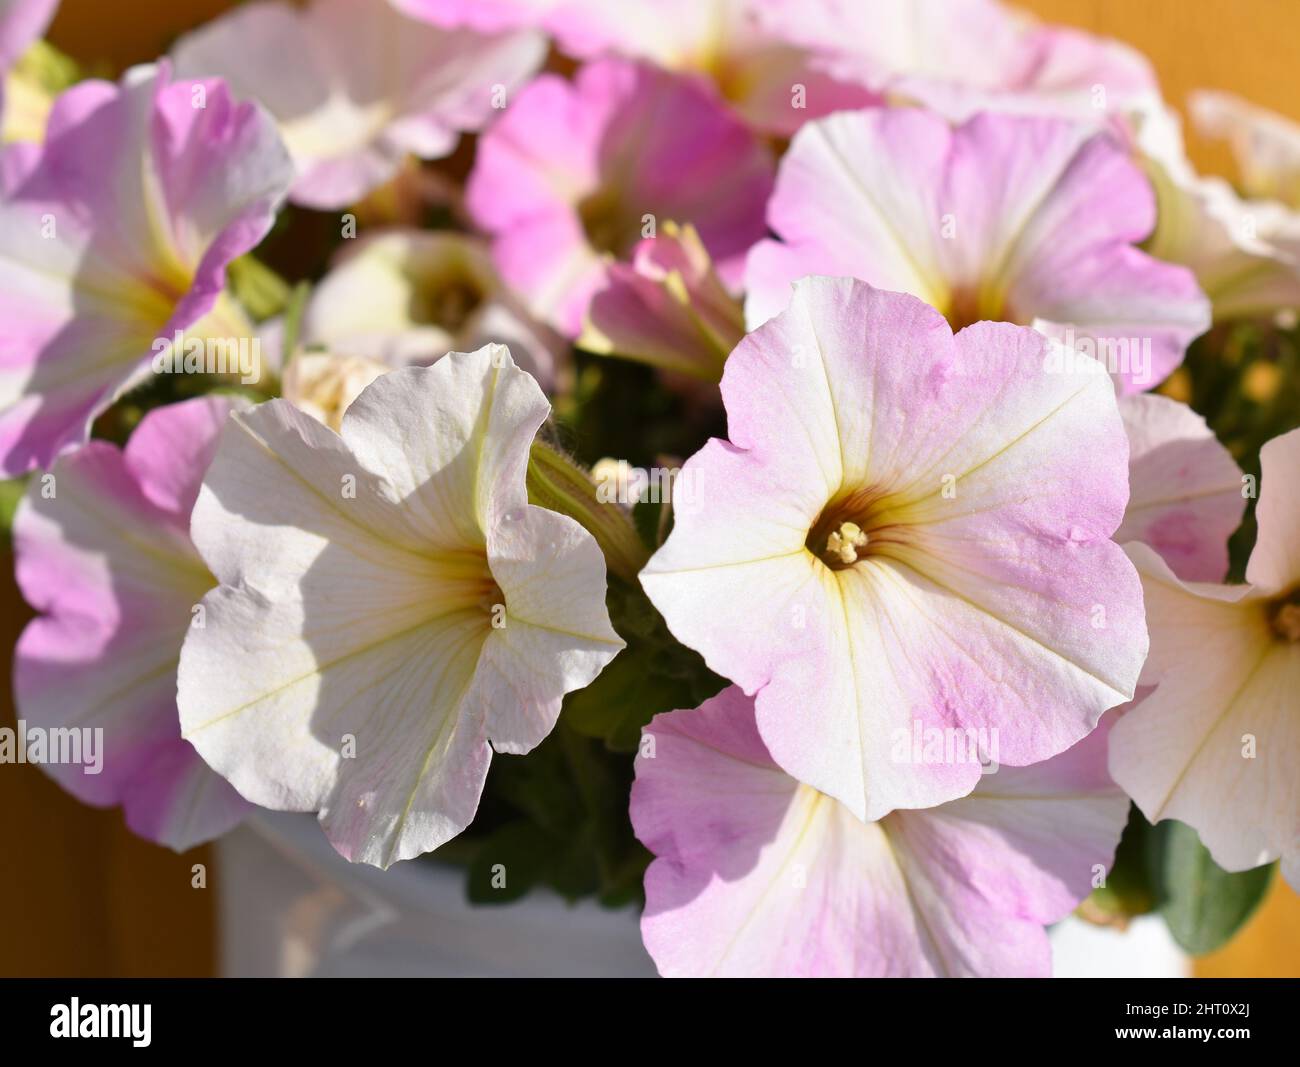 Gros plan sur les fleurs pétunia à rayures roses et blanches Banque D'Images